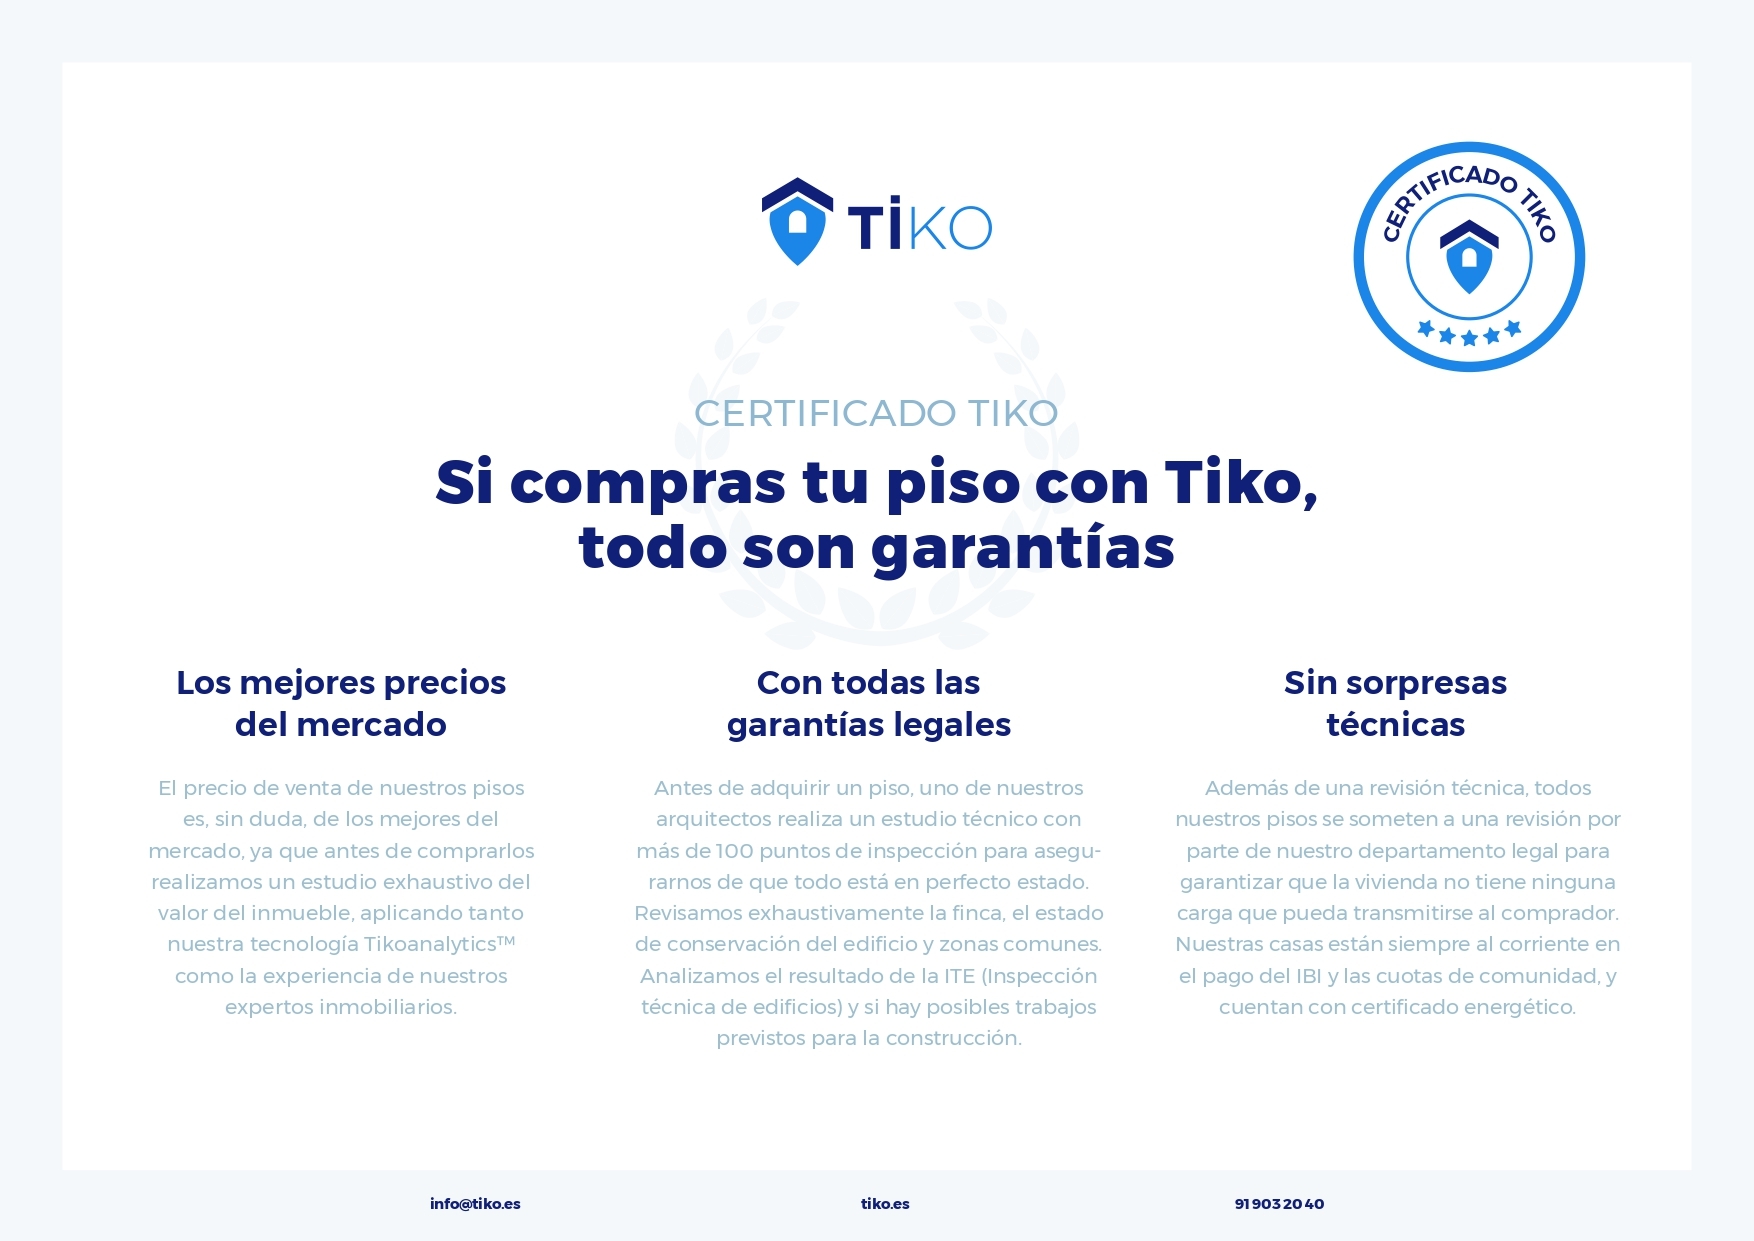 Piso de Tiko a la venta en Urano, ubicado en el distrito Alcorcón de Madrid